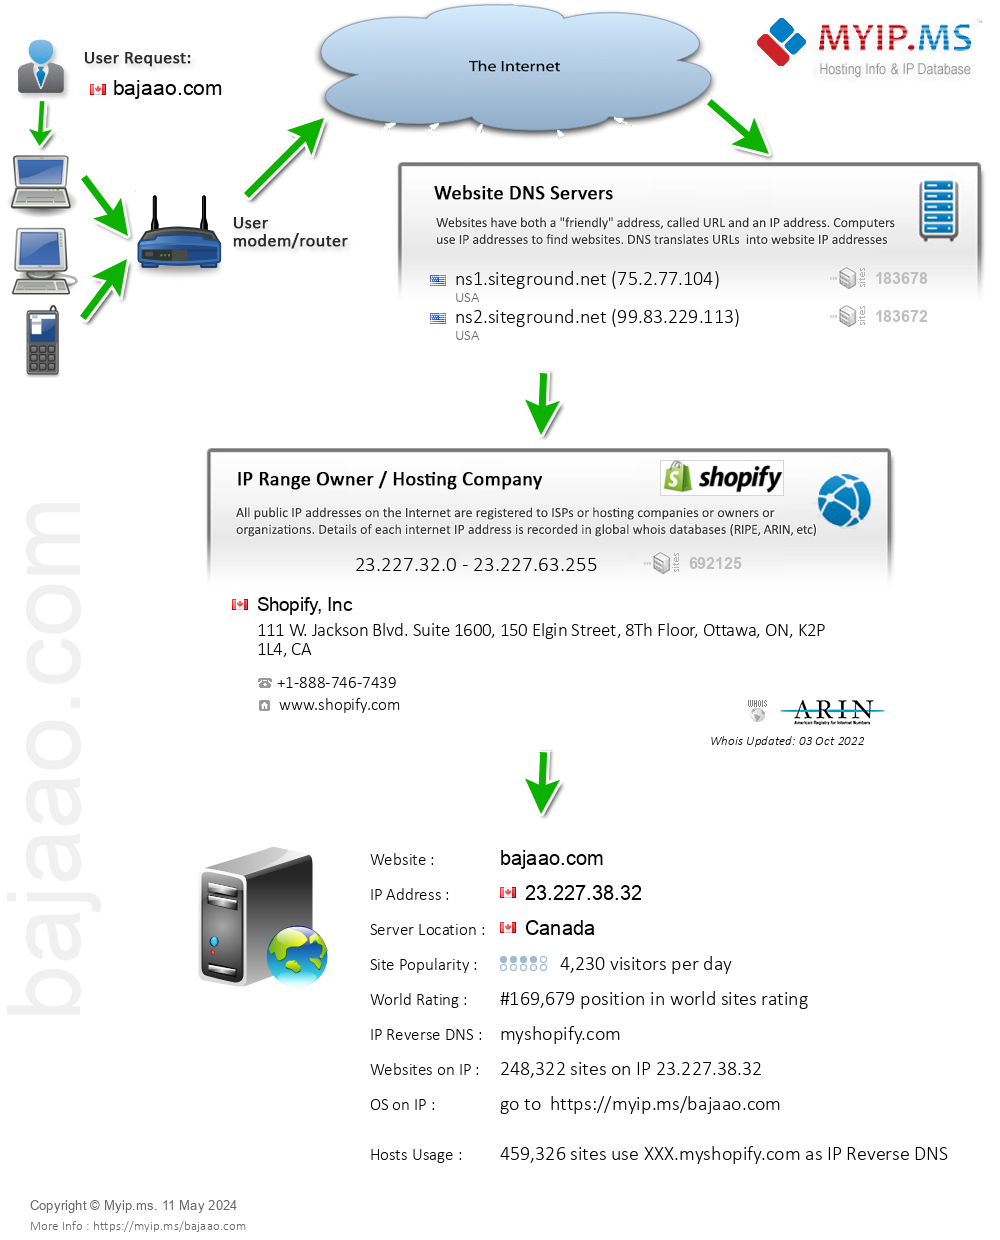 Bajaao.com - Website Hosting Visual IP Diagram